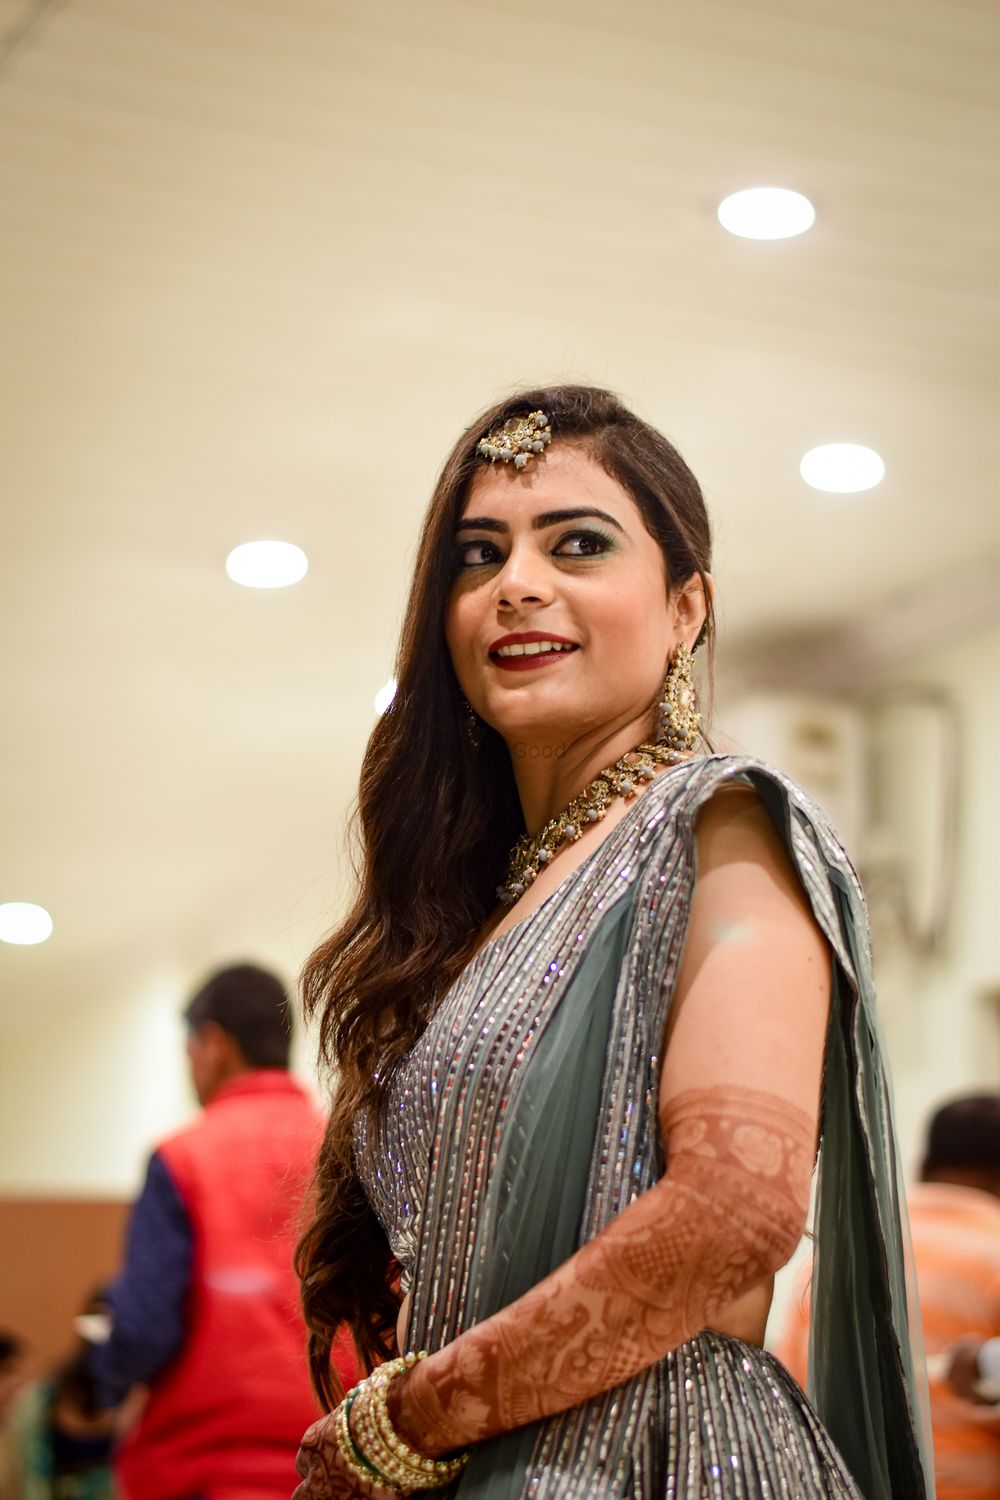 Photo From Anisha Weds Rajib - By Makeoverxpress - MOXSA